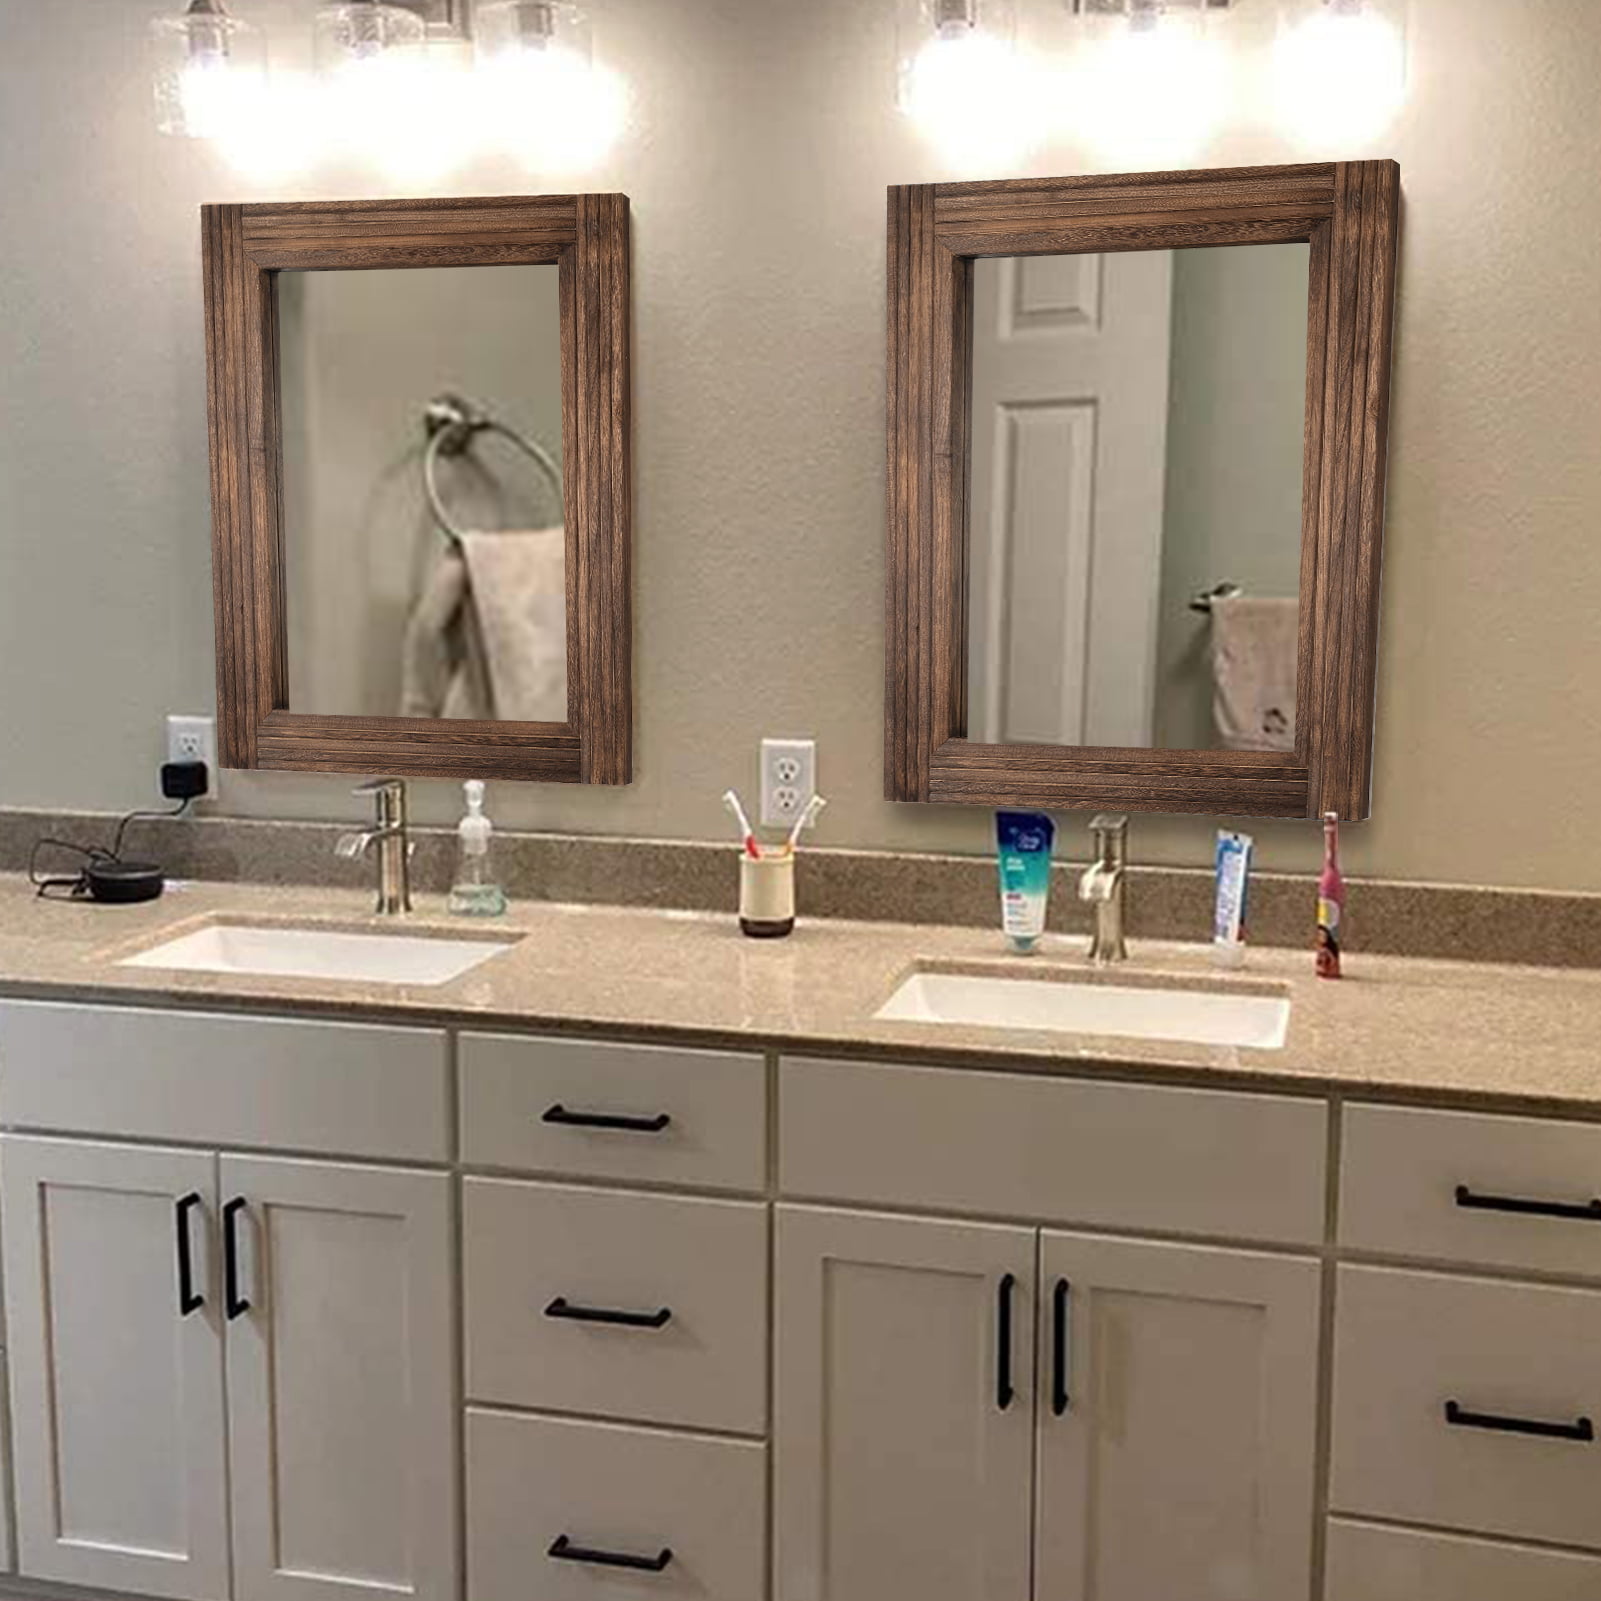 Boyel Living 36 in. W x 48 in. H Frameless Rectangular LED Light Bathroom Vanity Mirror in Clear